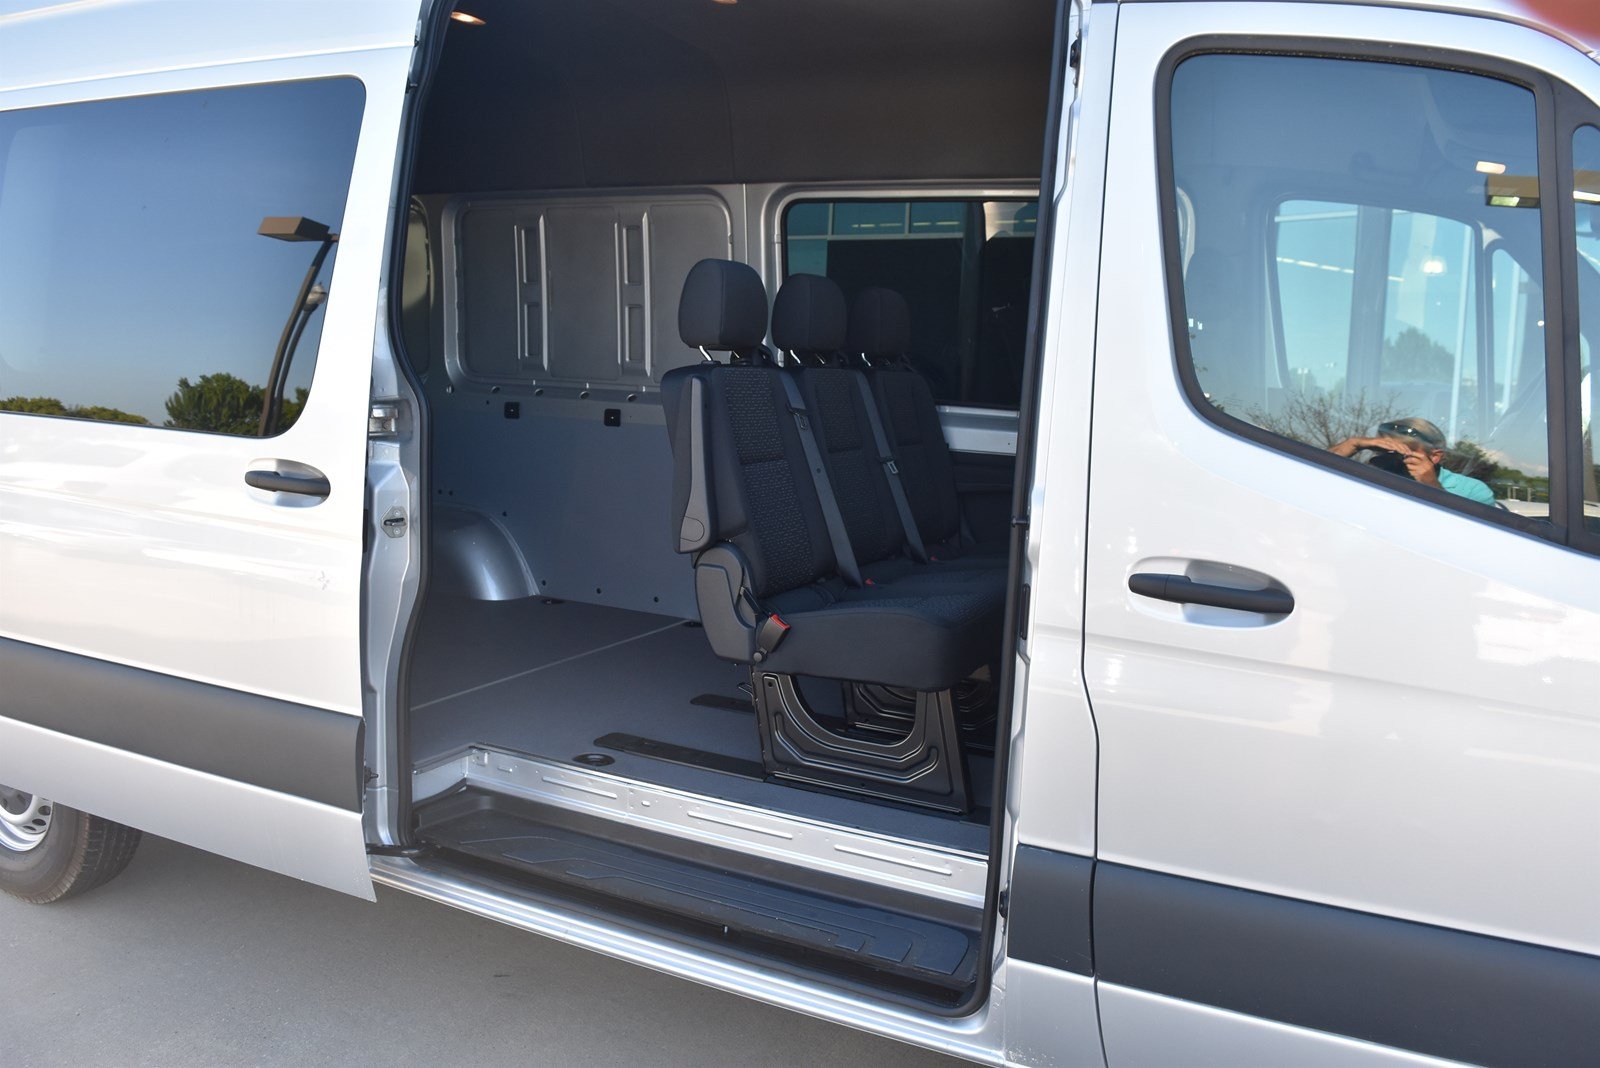 New 2019 Mercedes Benz Sprinter Crew Van Rwd Full Size Cargo Van